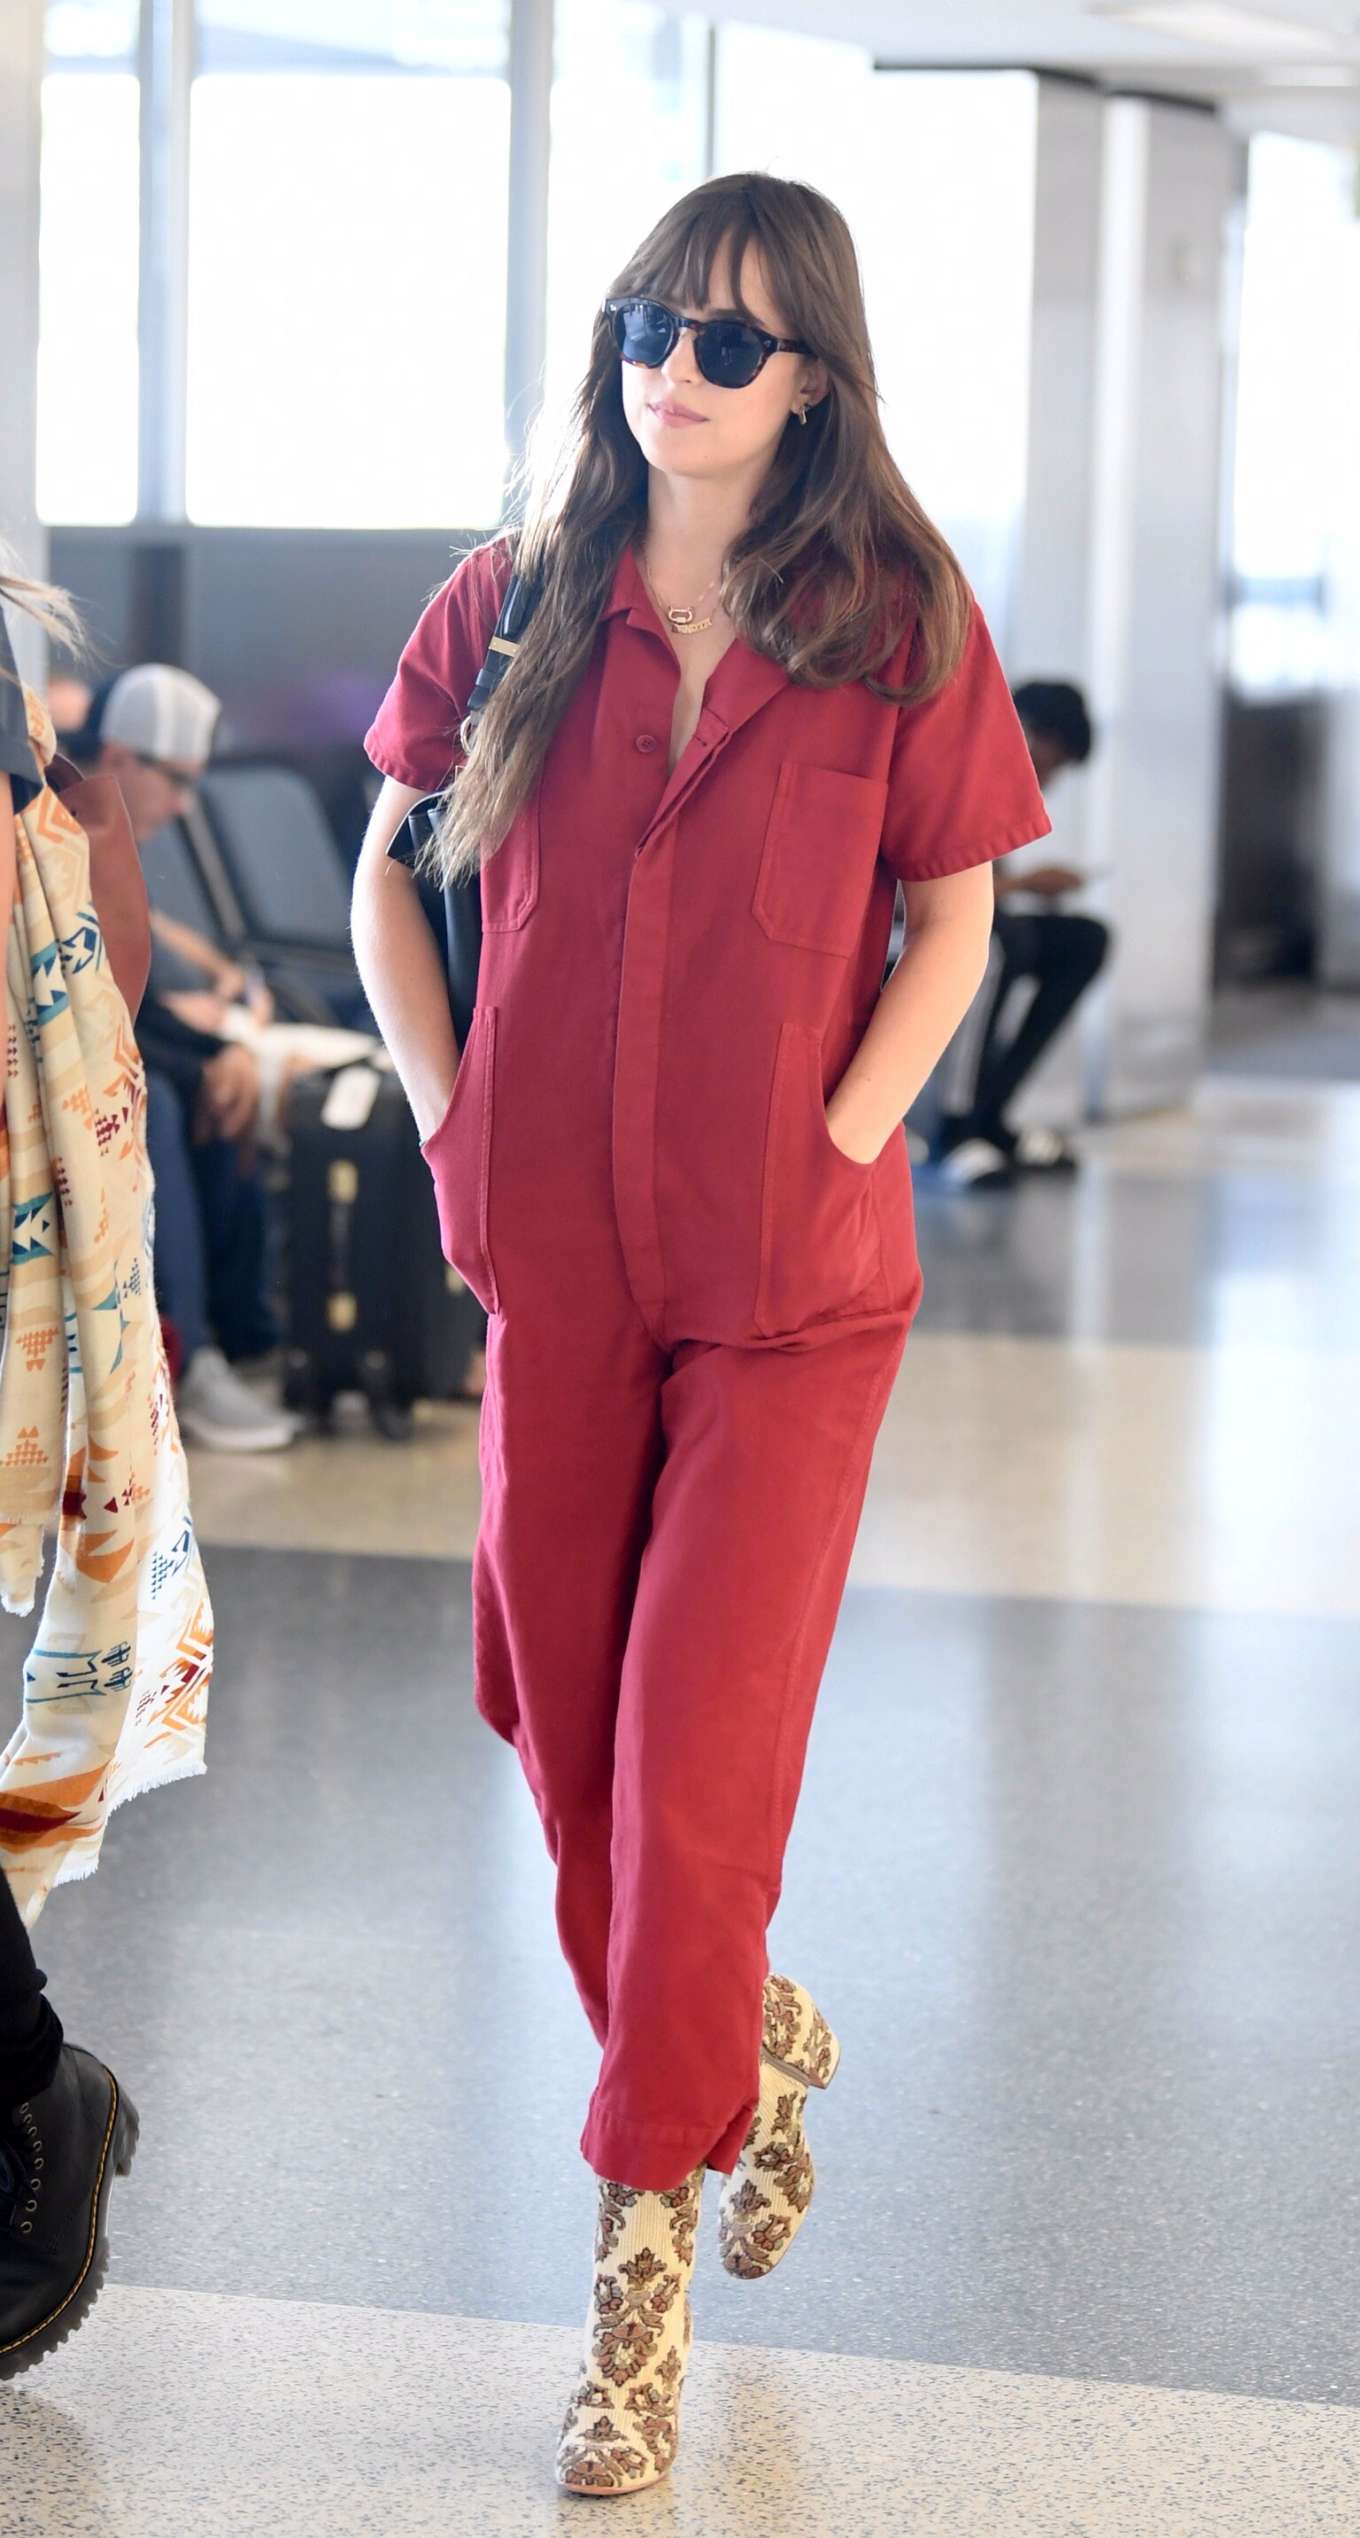 Dakota Johnson 2019 : Dakota Johnson in Red Jumpsuit-08